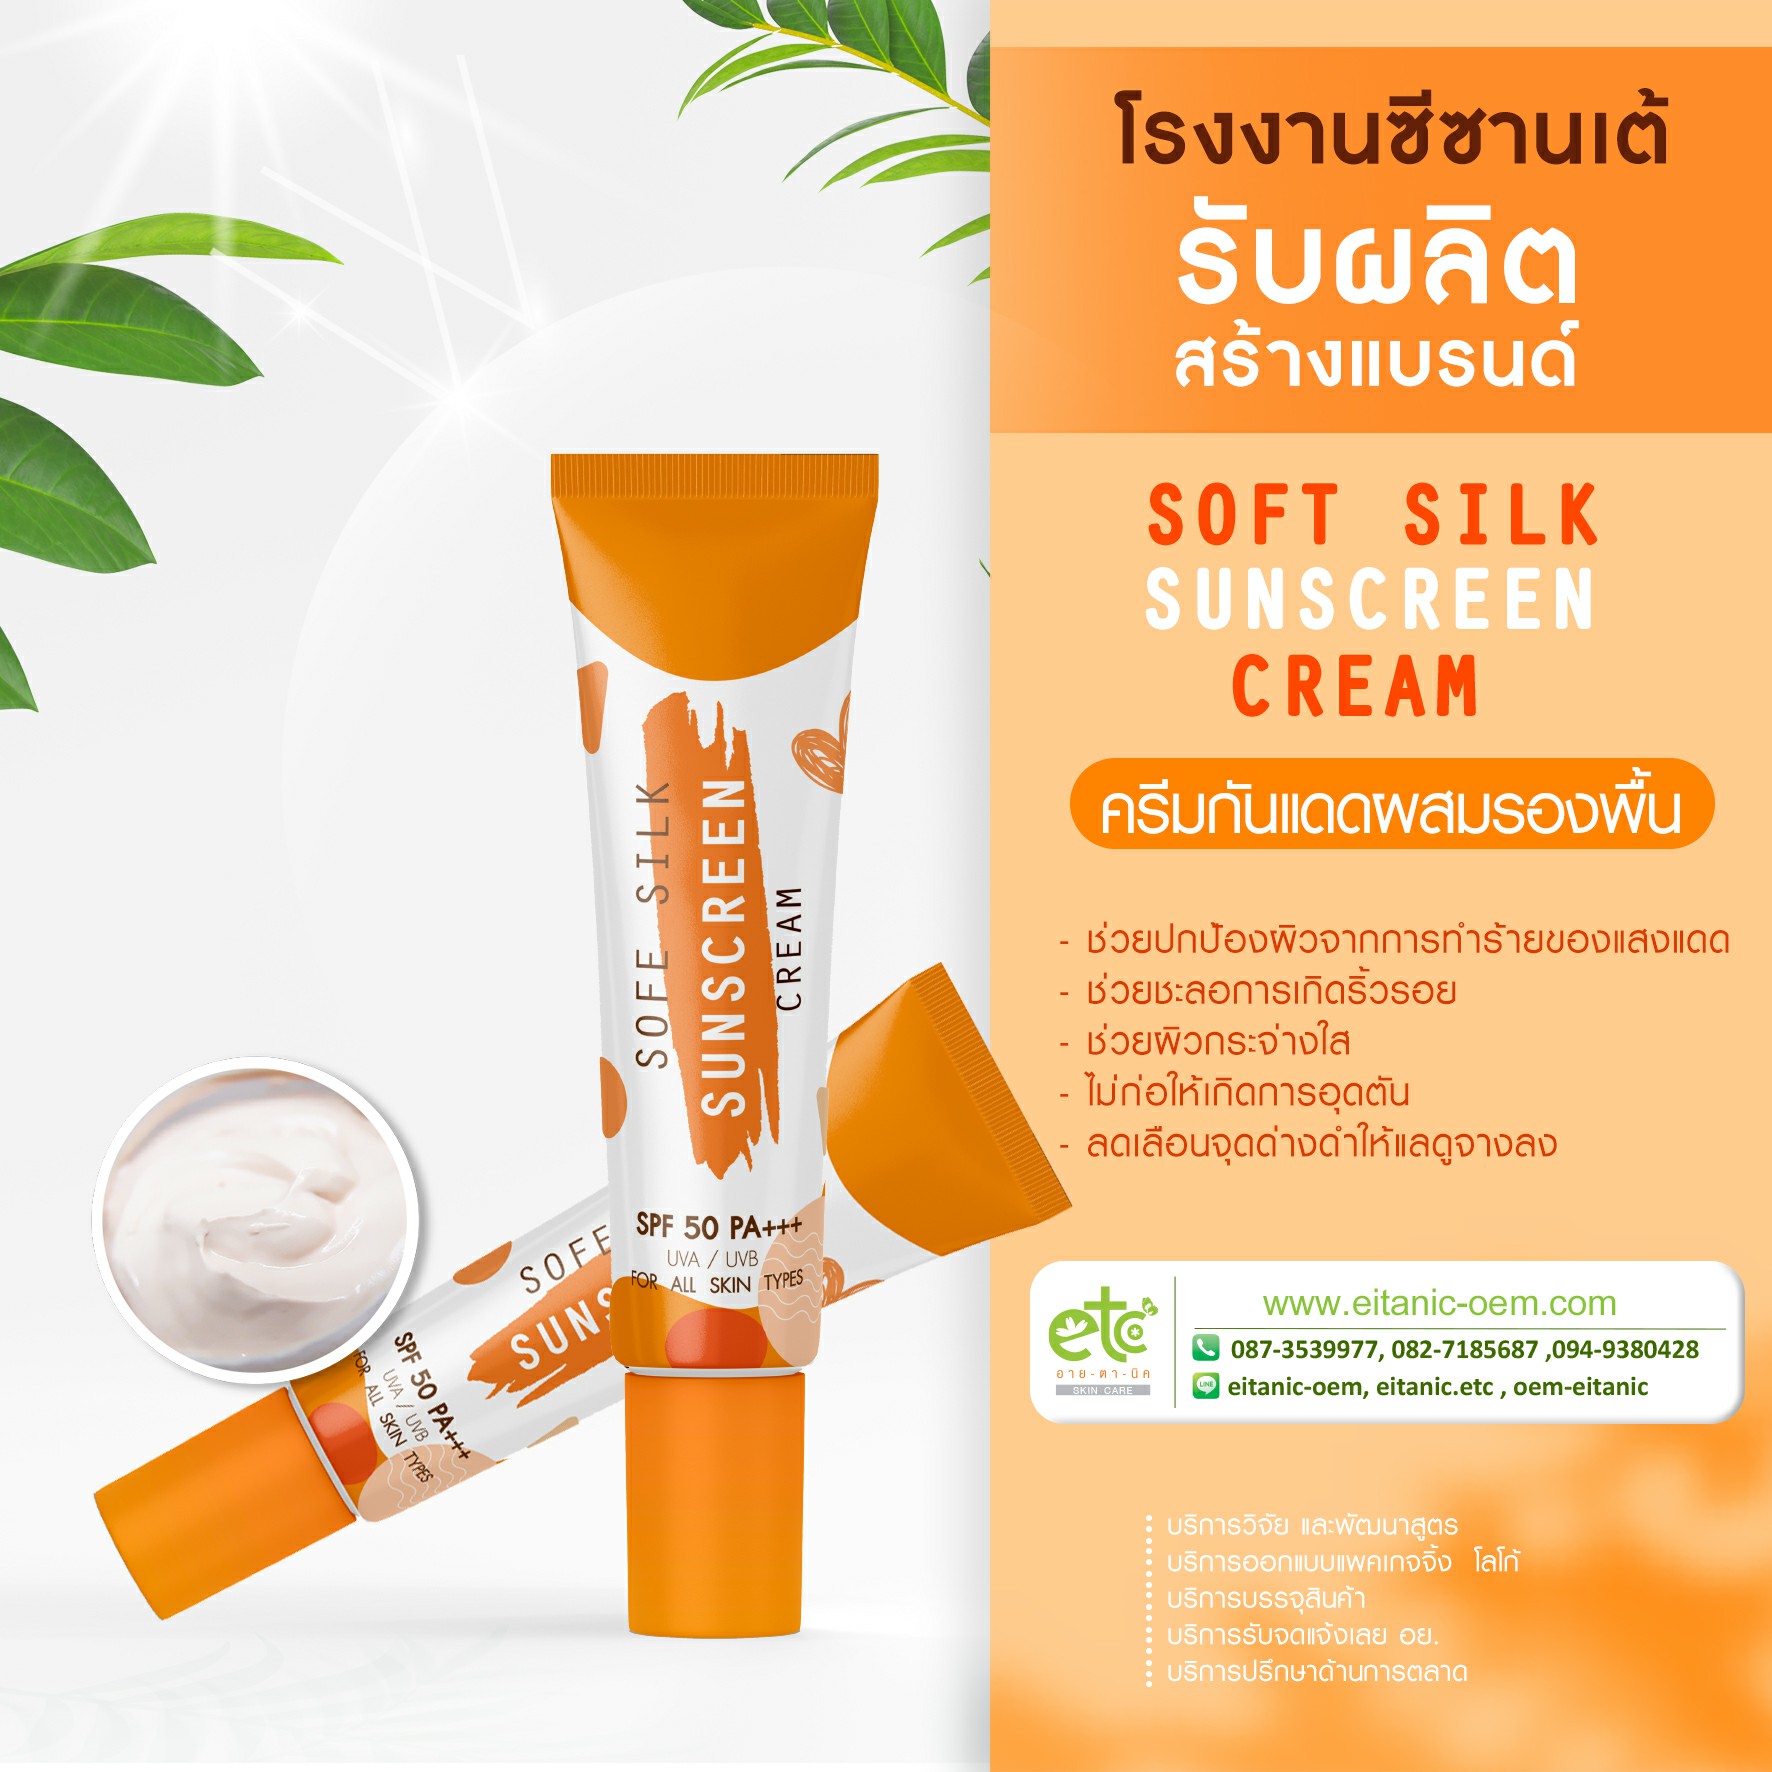 Soft Silk Sunscreen Cream